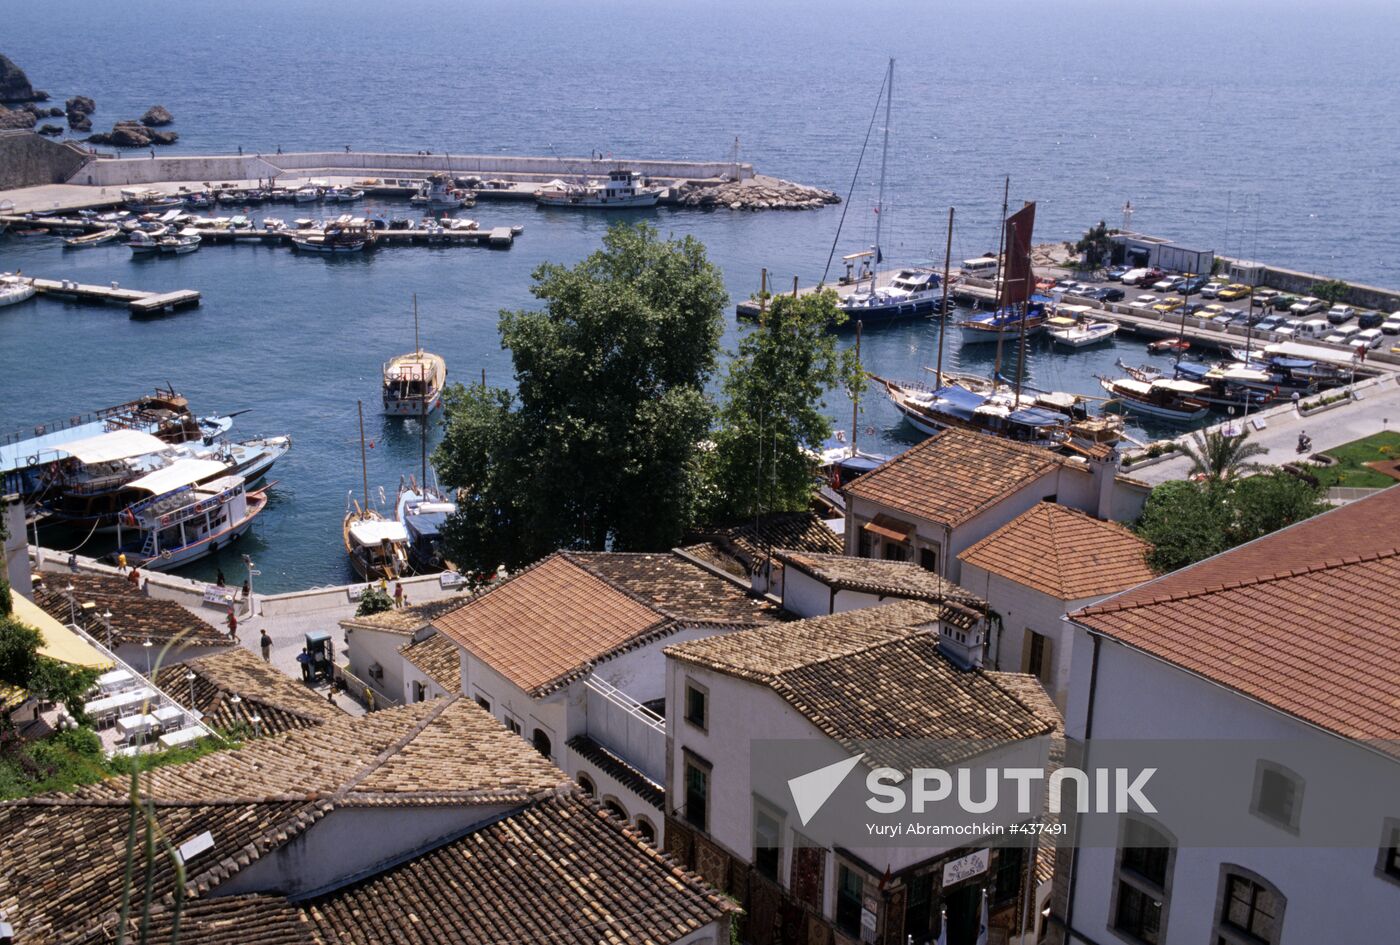 Harbor in Antalya